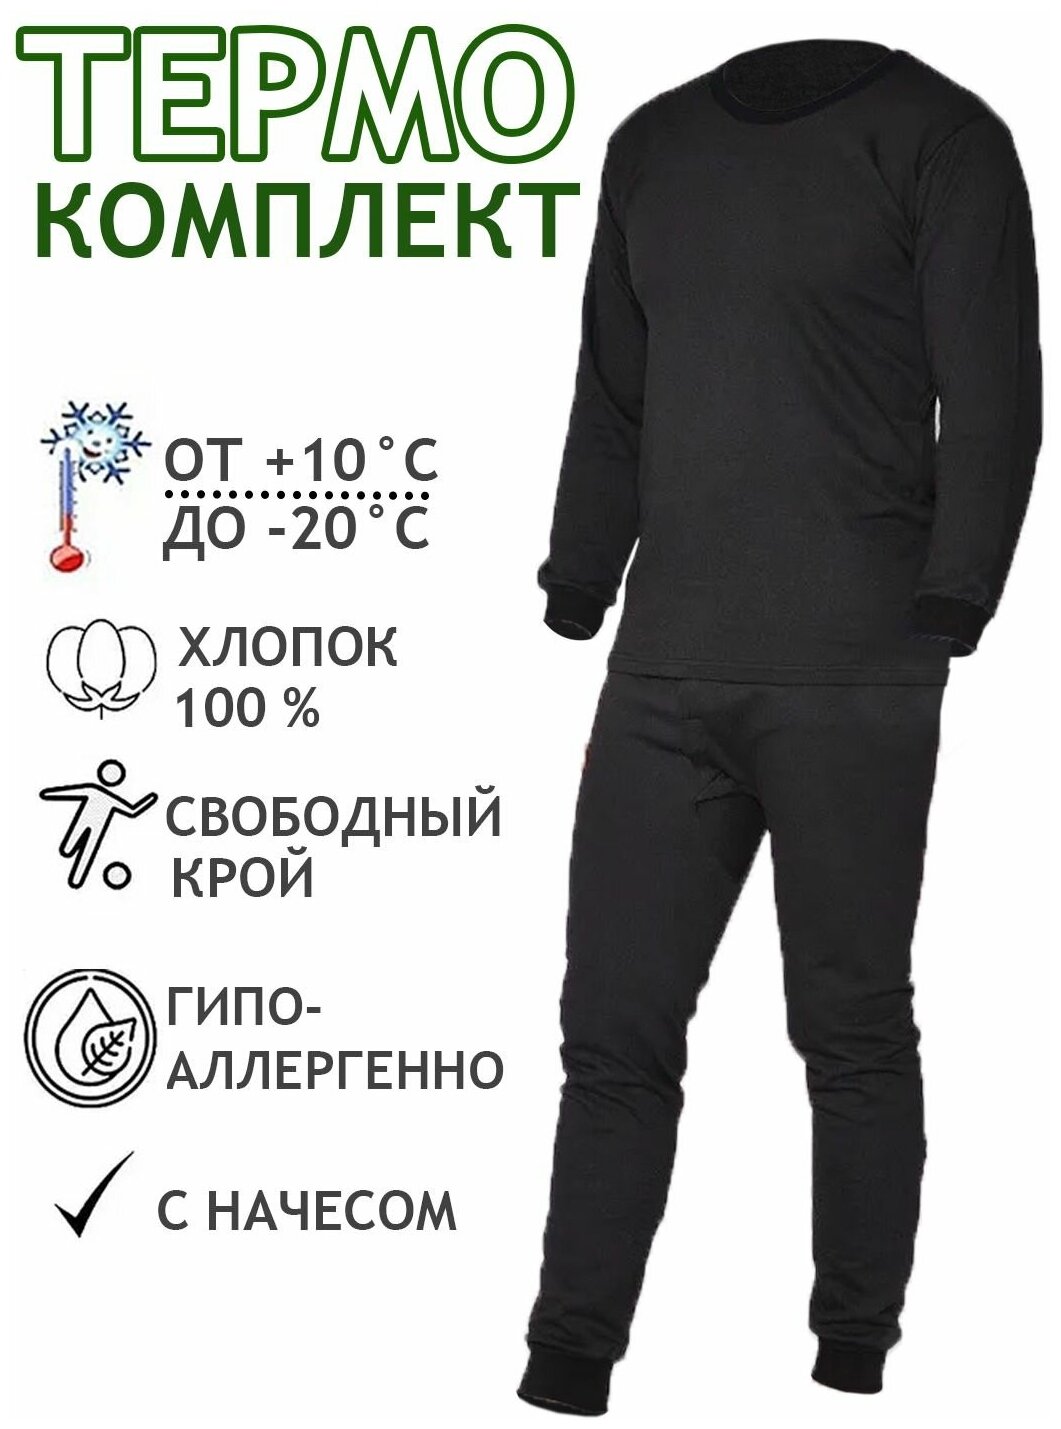 Комплект нательного термобелья с начесом для мужчин кальсоны + кофта. Цвет черный размер 48